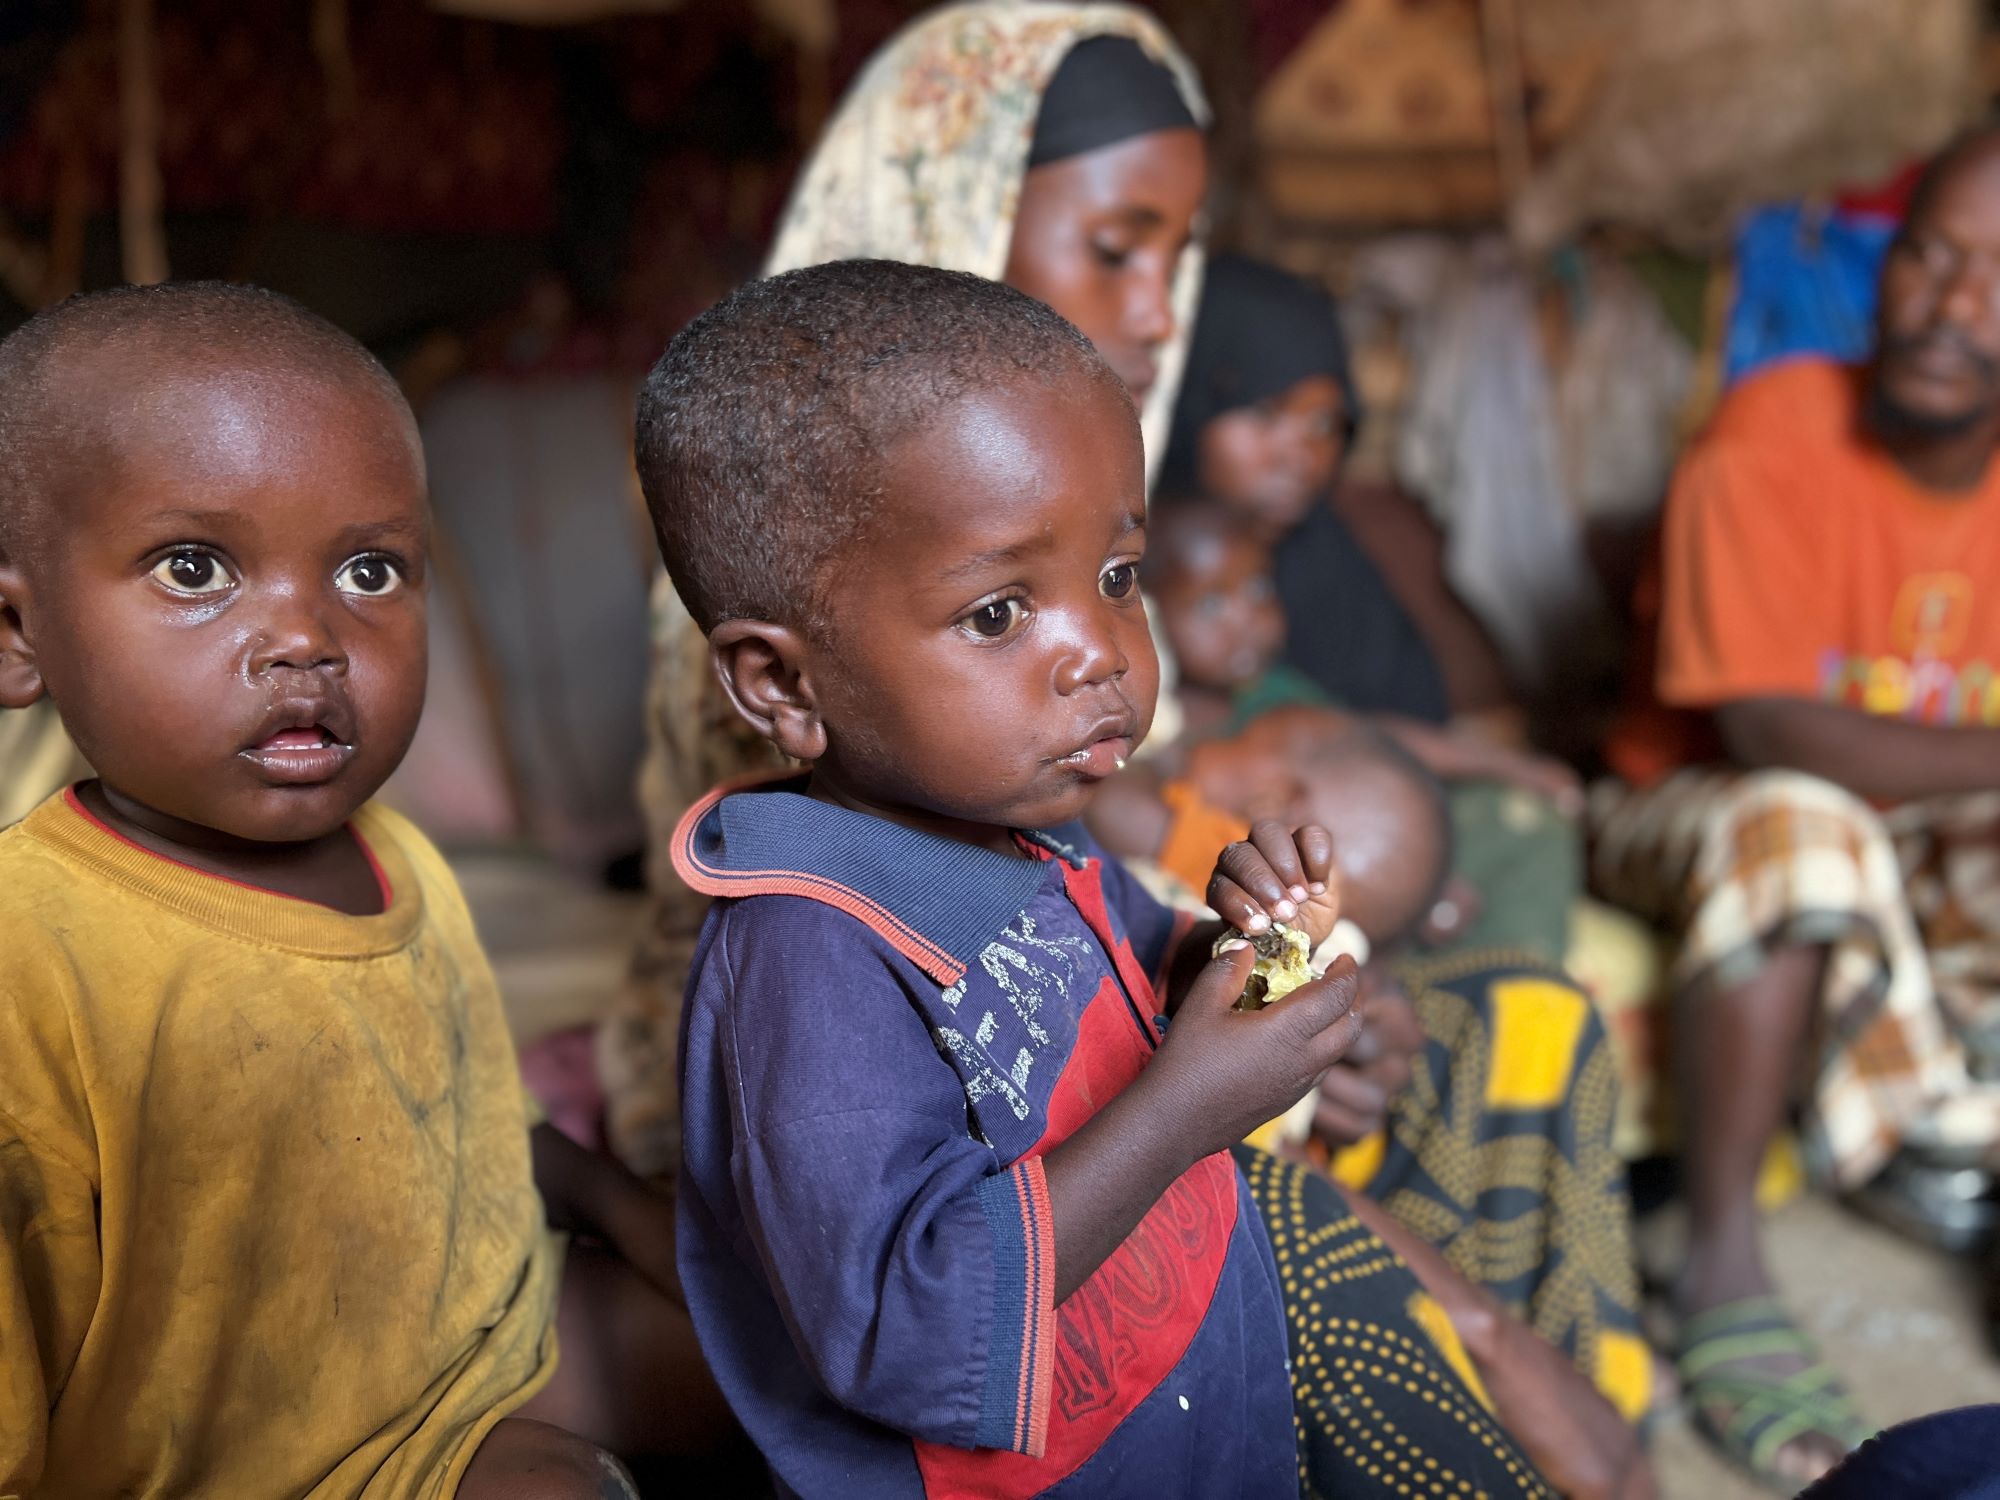 Somali children eating wild fruits in temporary shelter